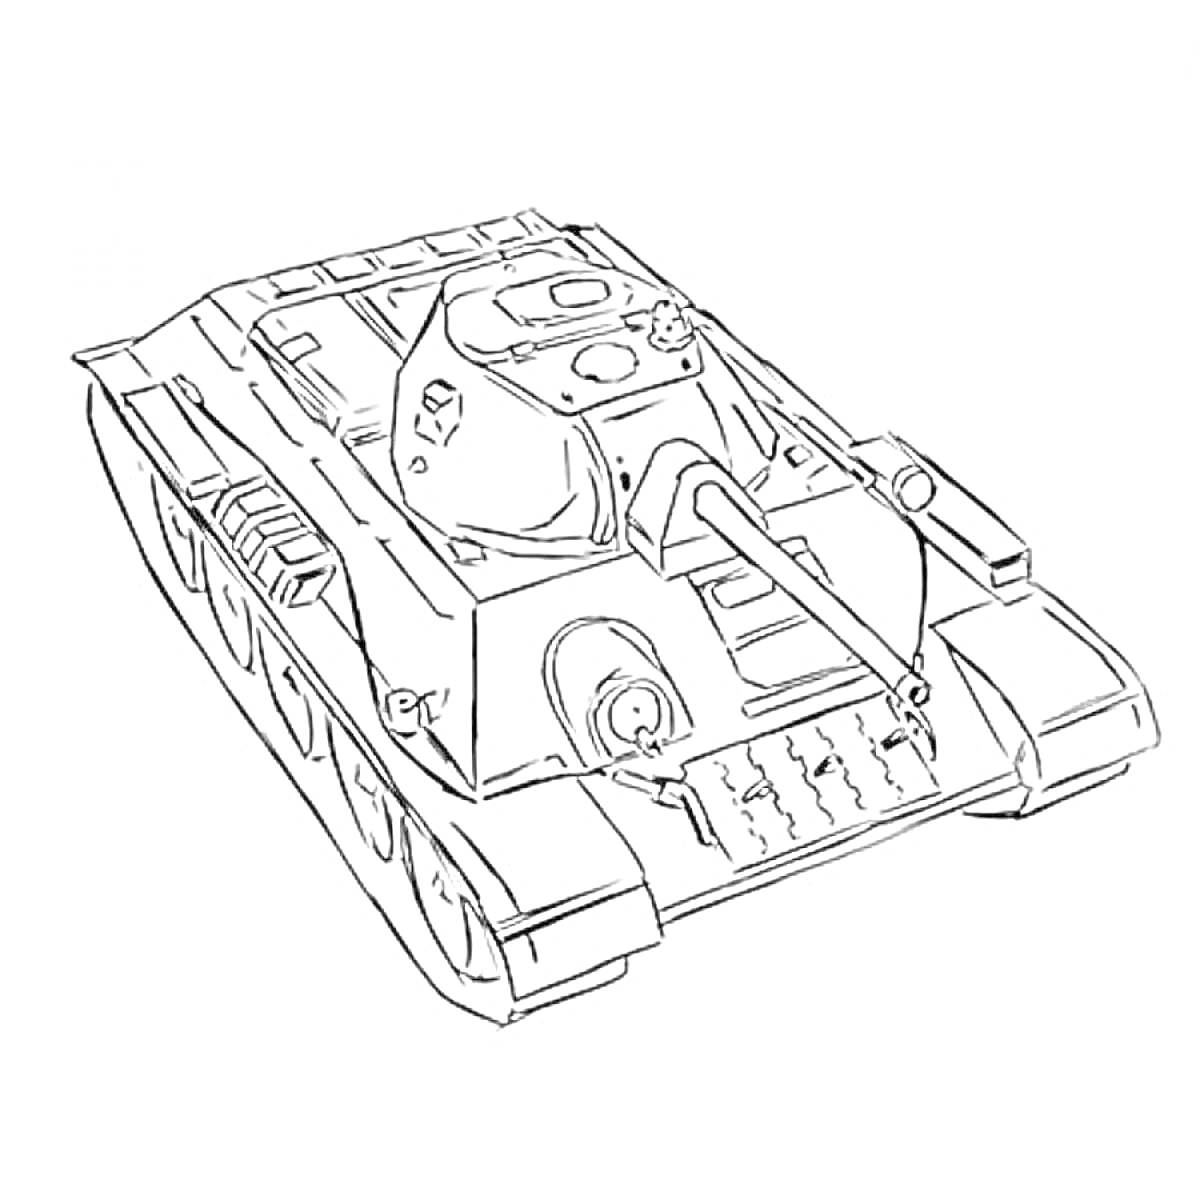 Танковая раскраска Т-34 с каноном, люками и гусеницами